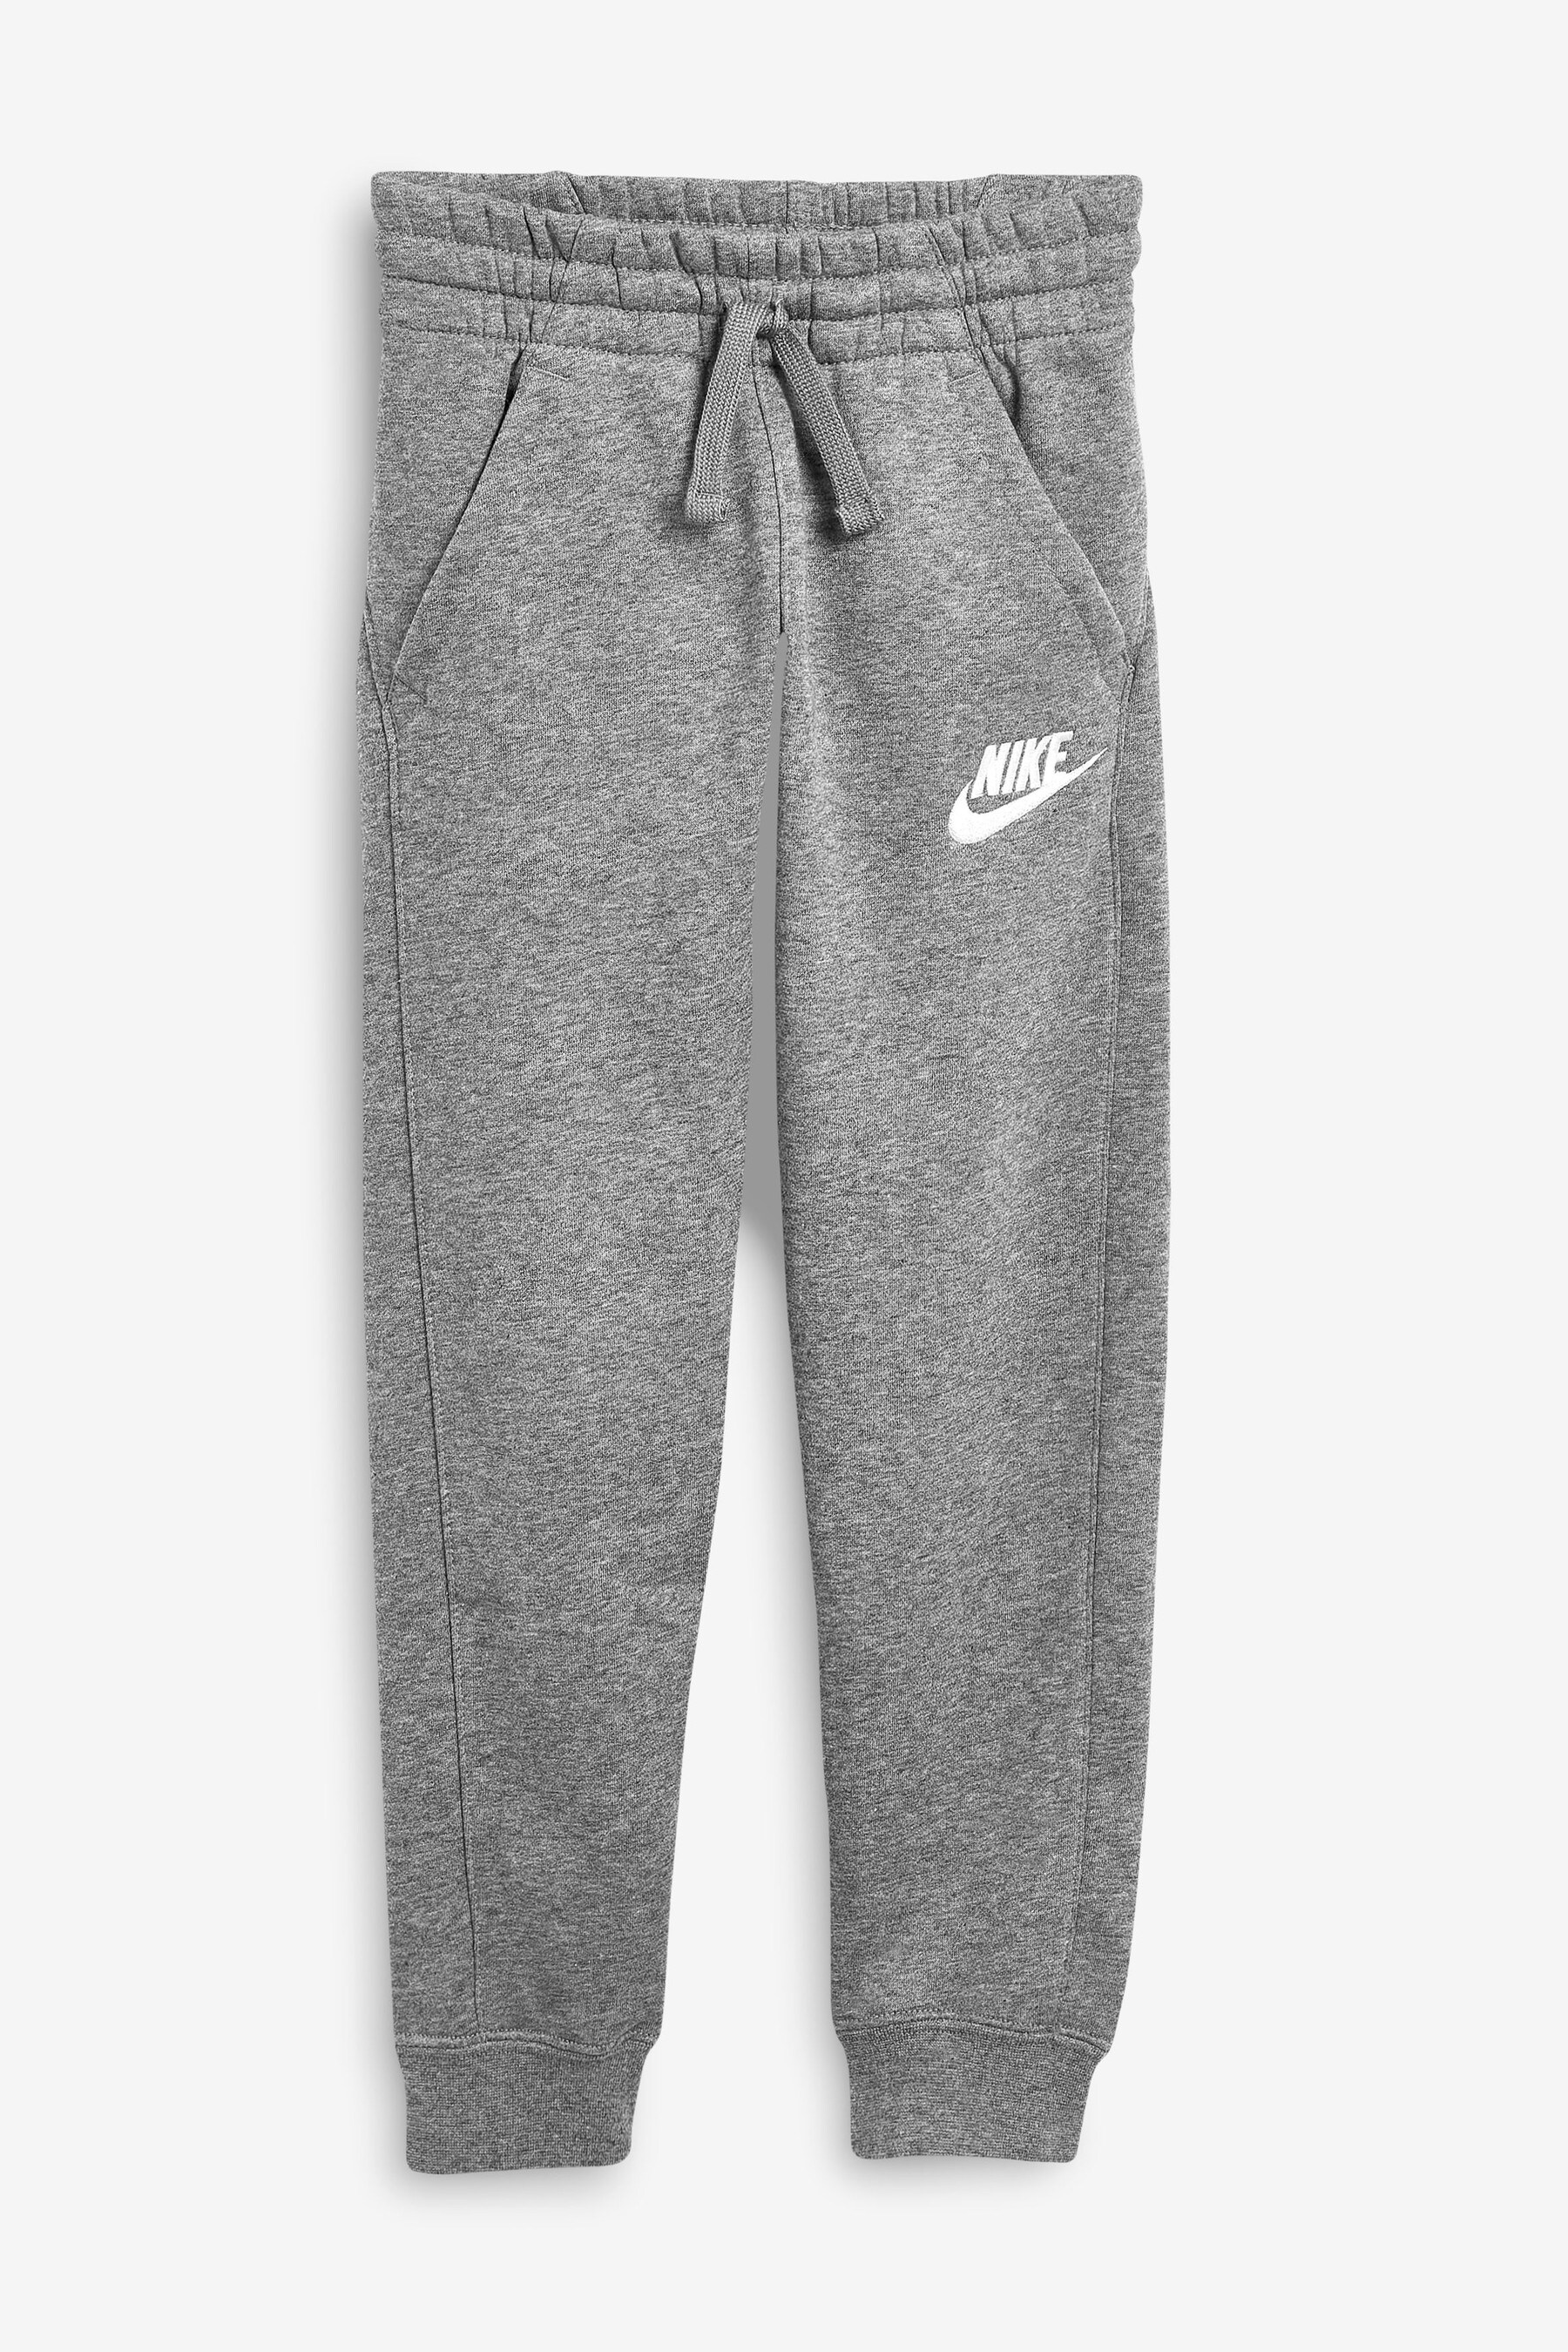 Клубные спортивные штаны Nike, серый